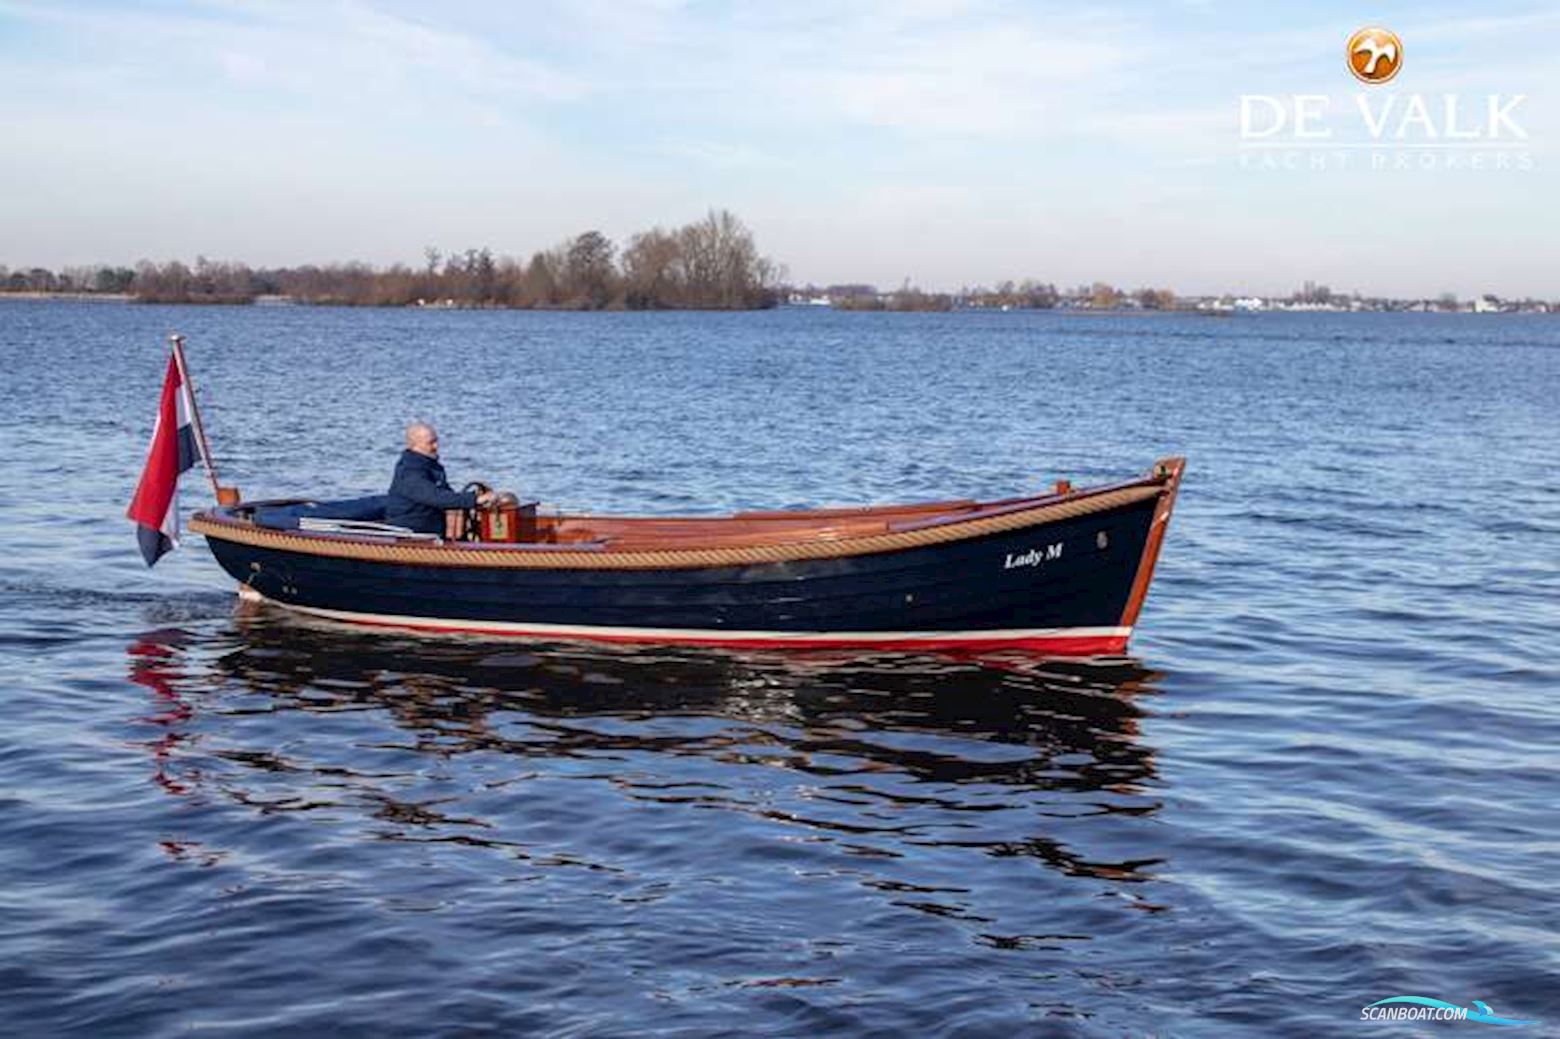 Wester Engh Goldenhorn 685 Sloep Motorbåd 2001, med Volvo Penta motor, Holland